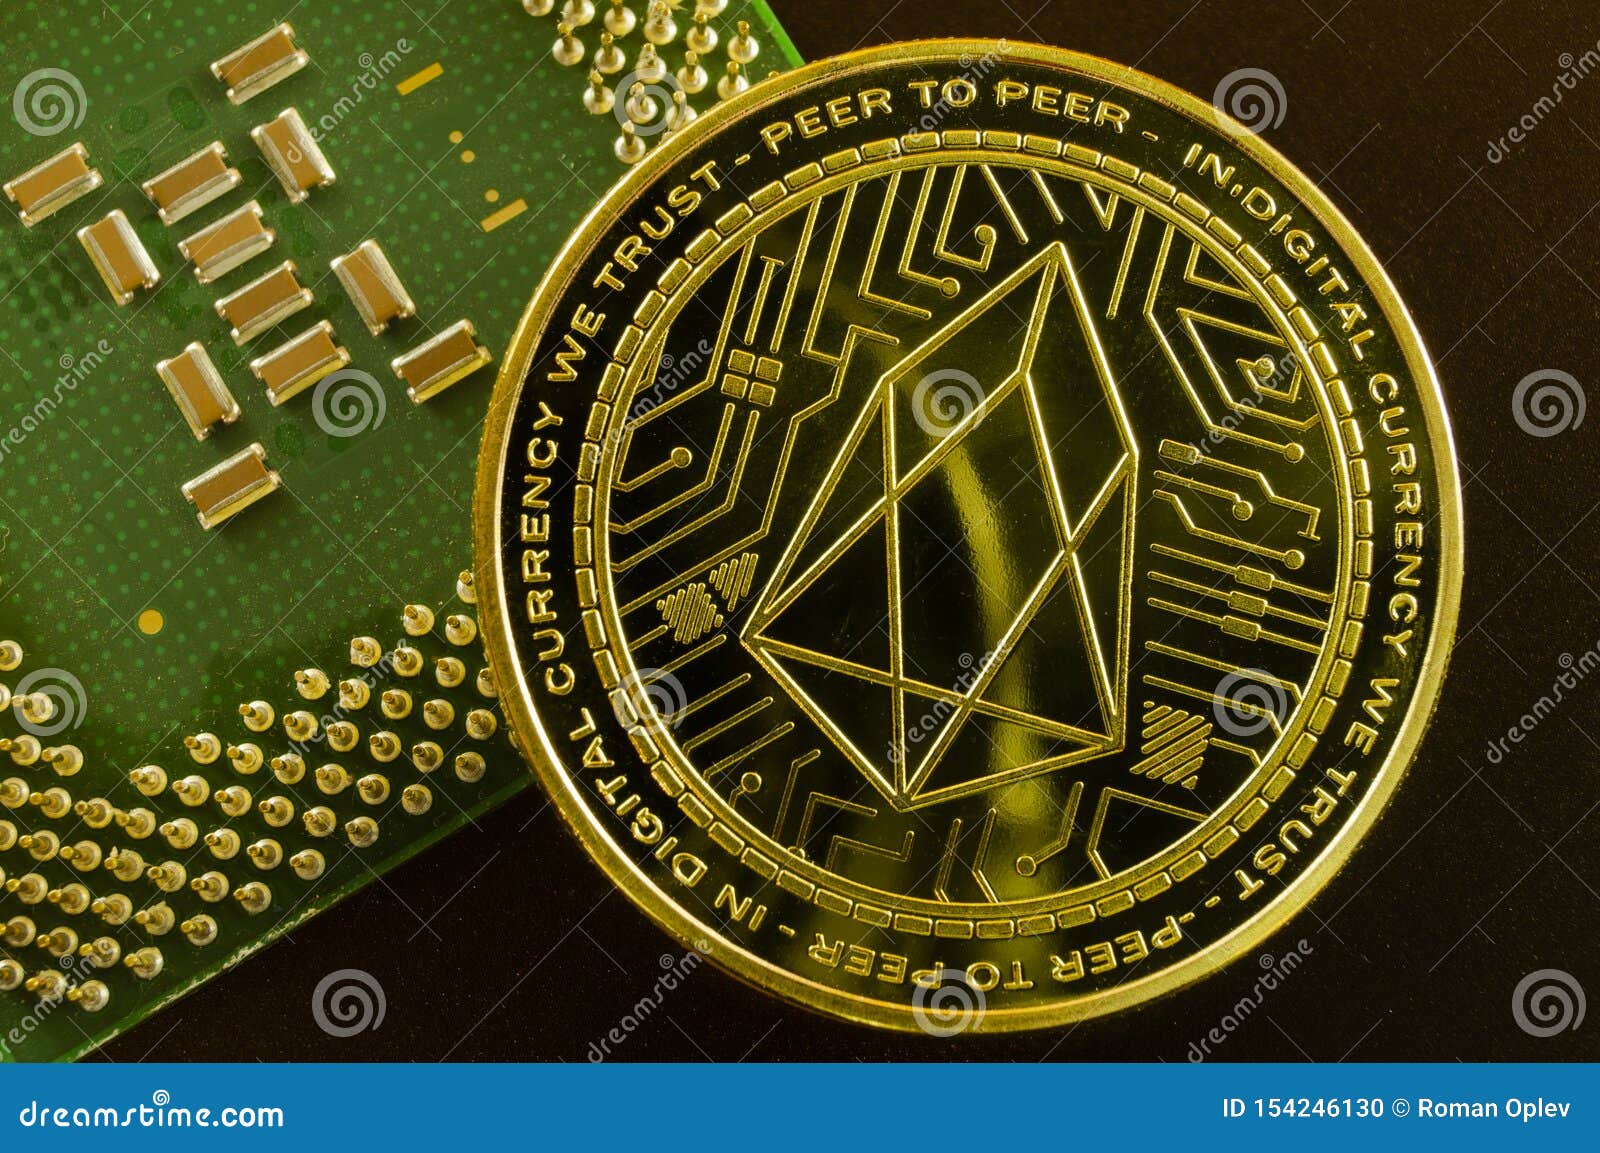 Eos crypto coin is buying bitcoin on coinbase safe